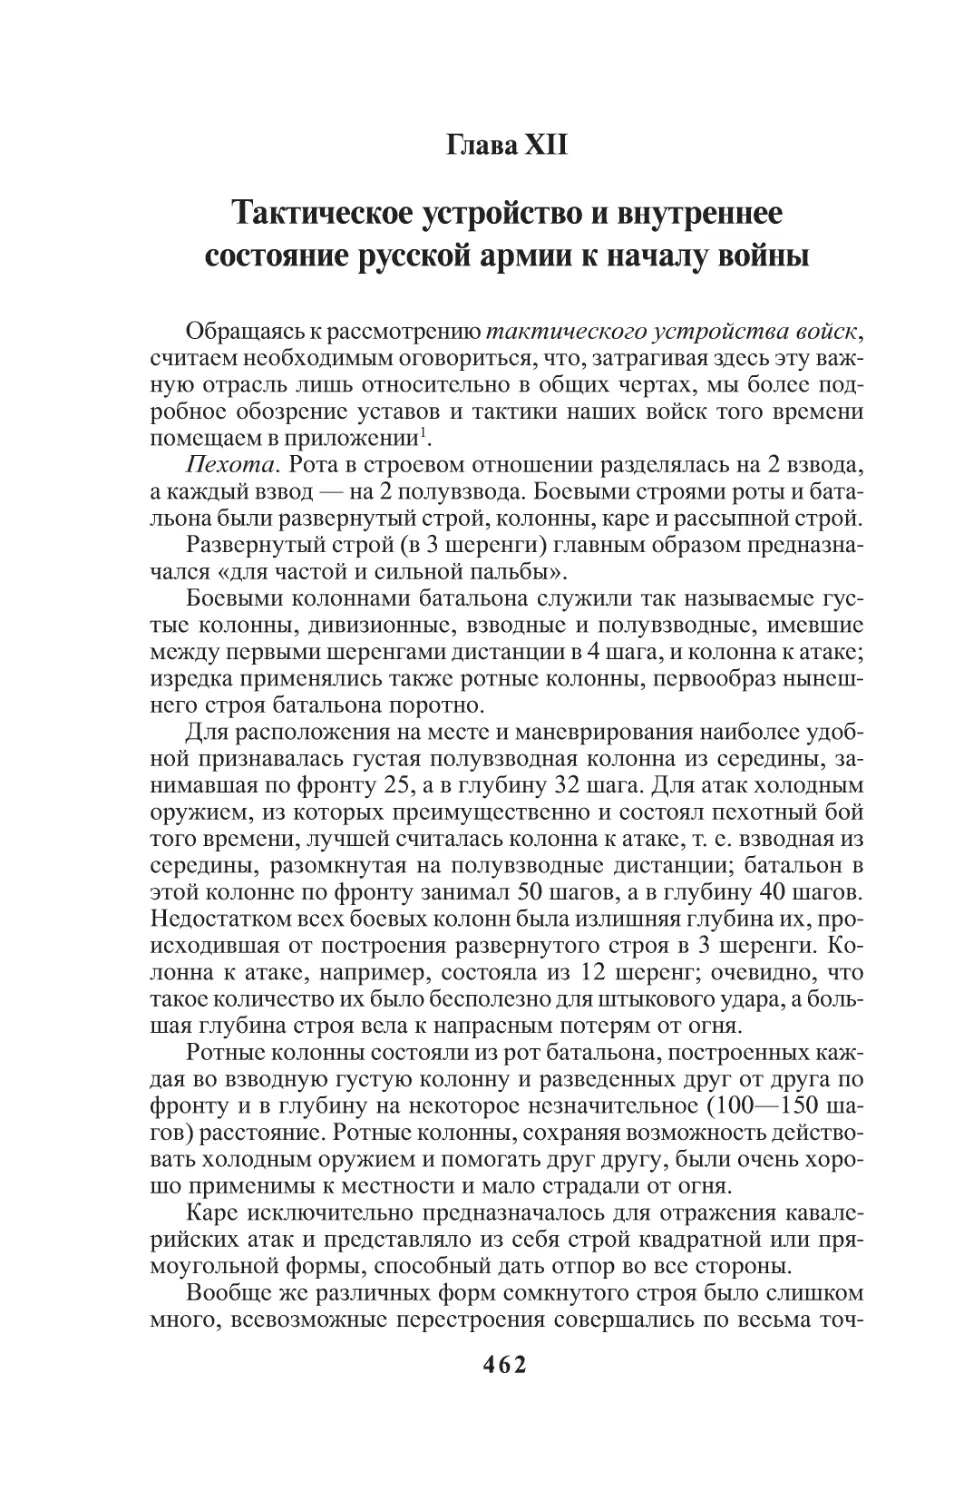 Глава XII. Тактическое устройство и внутреннее состояние русской армии к началу войны